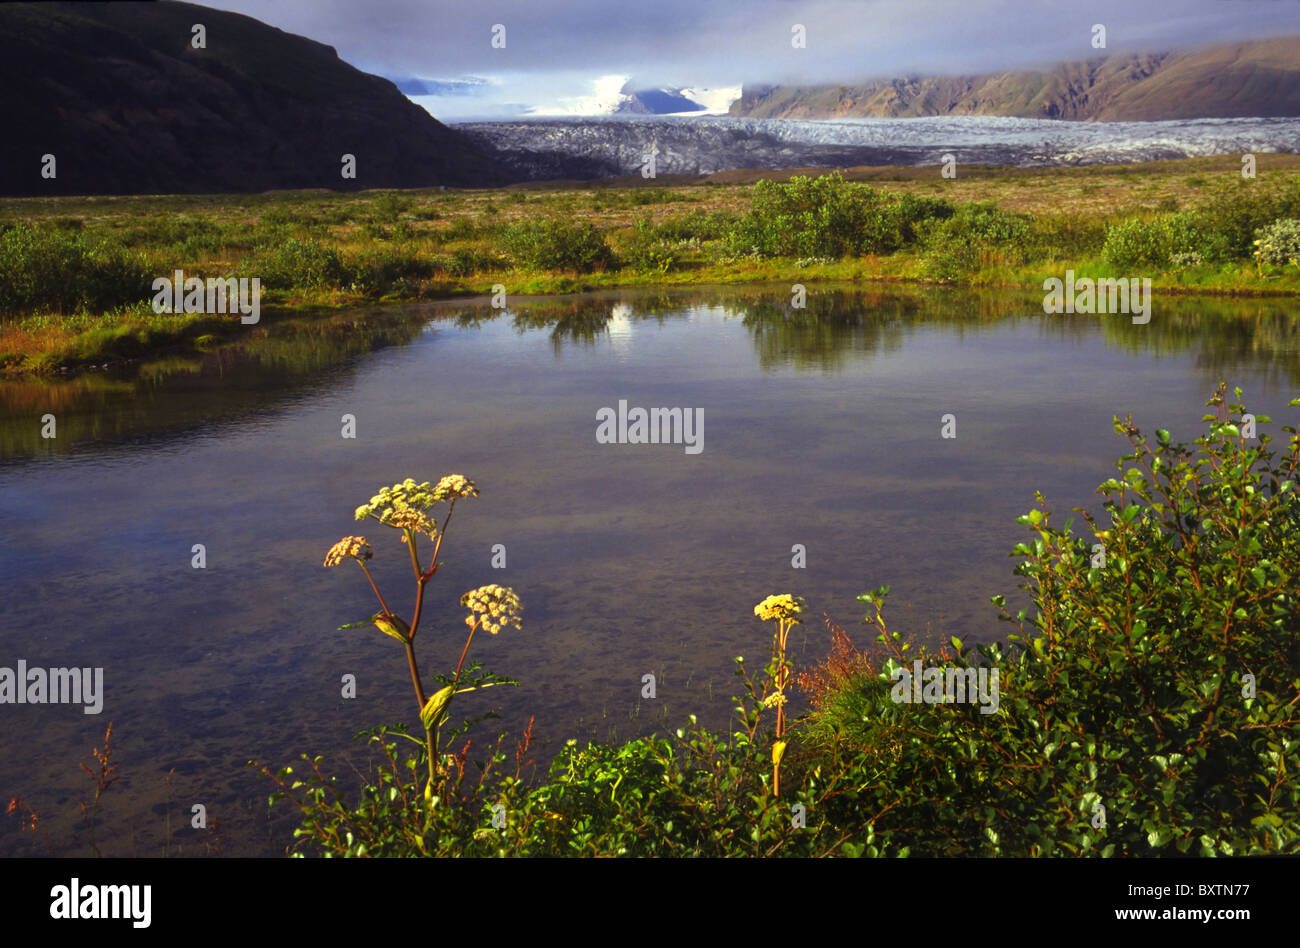 Europe, Iceland, Skafta Fell Landscape With Lake Stock Photo